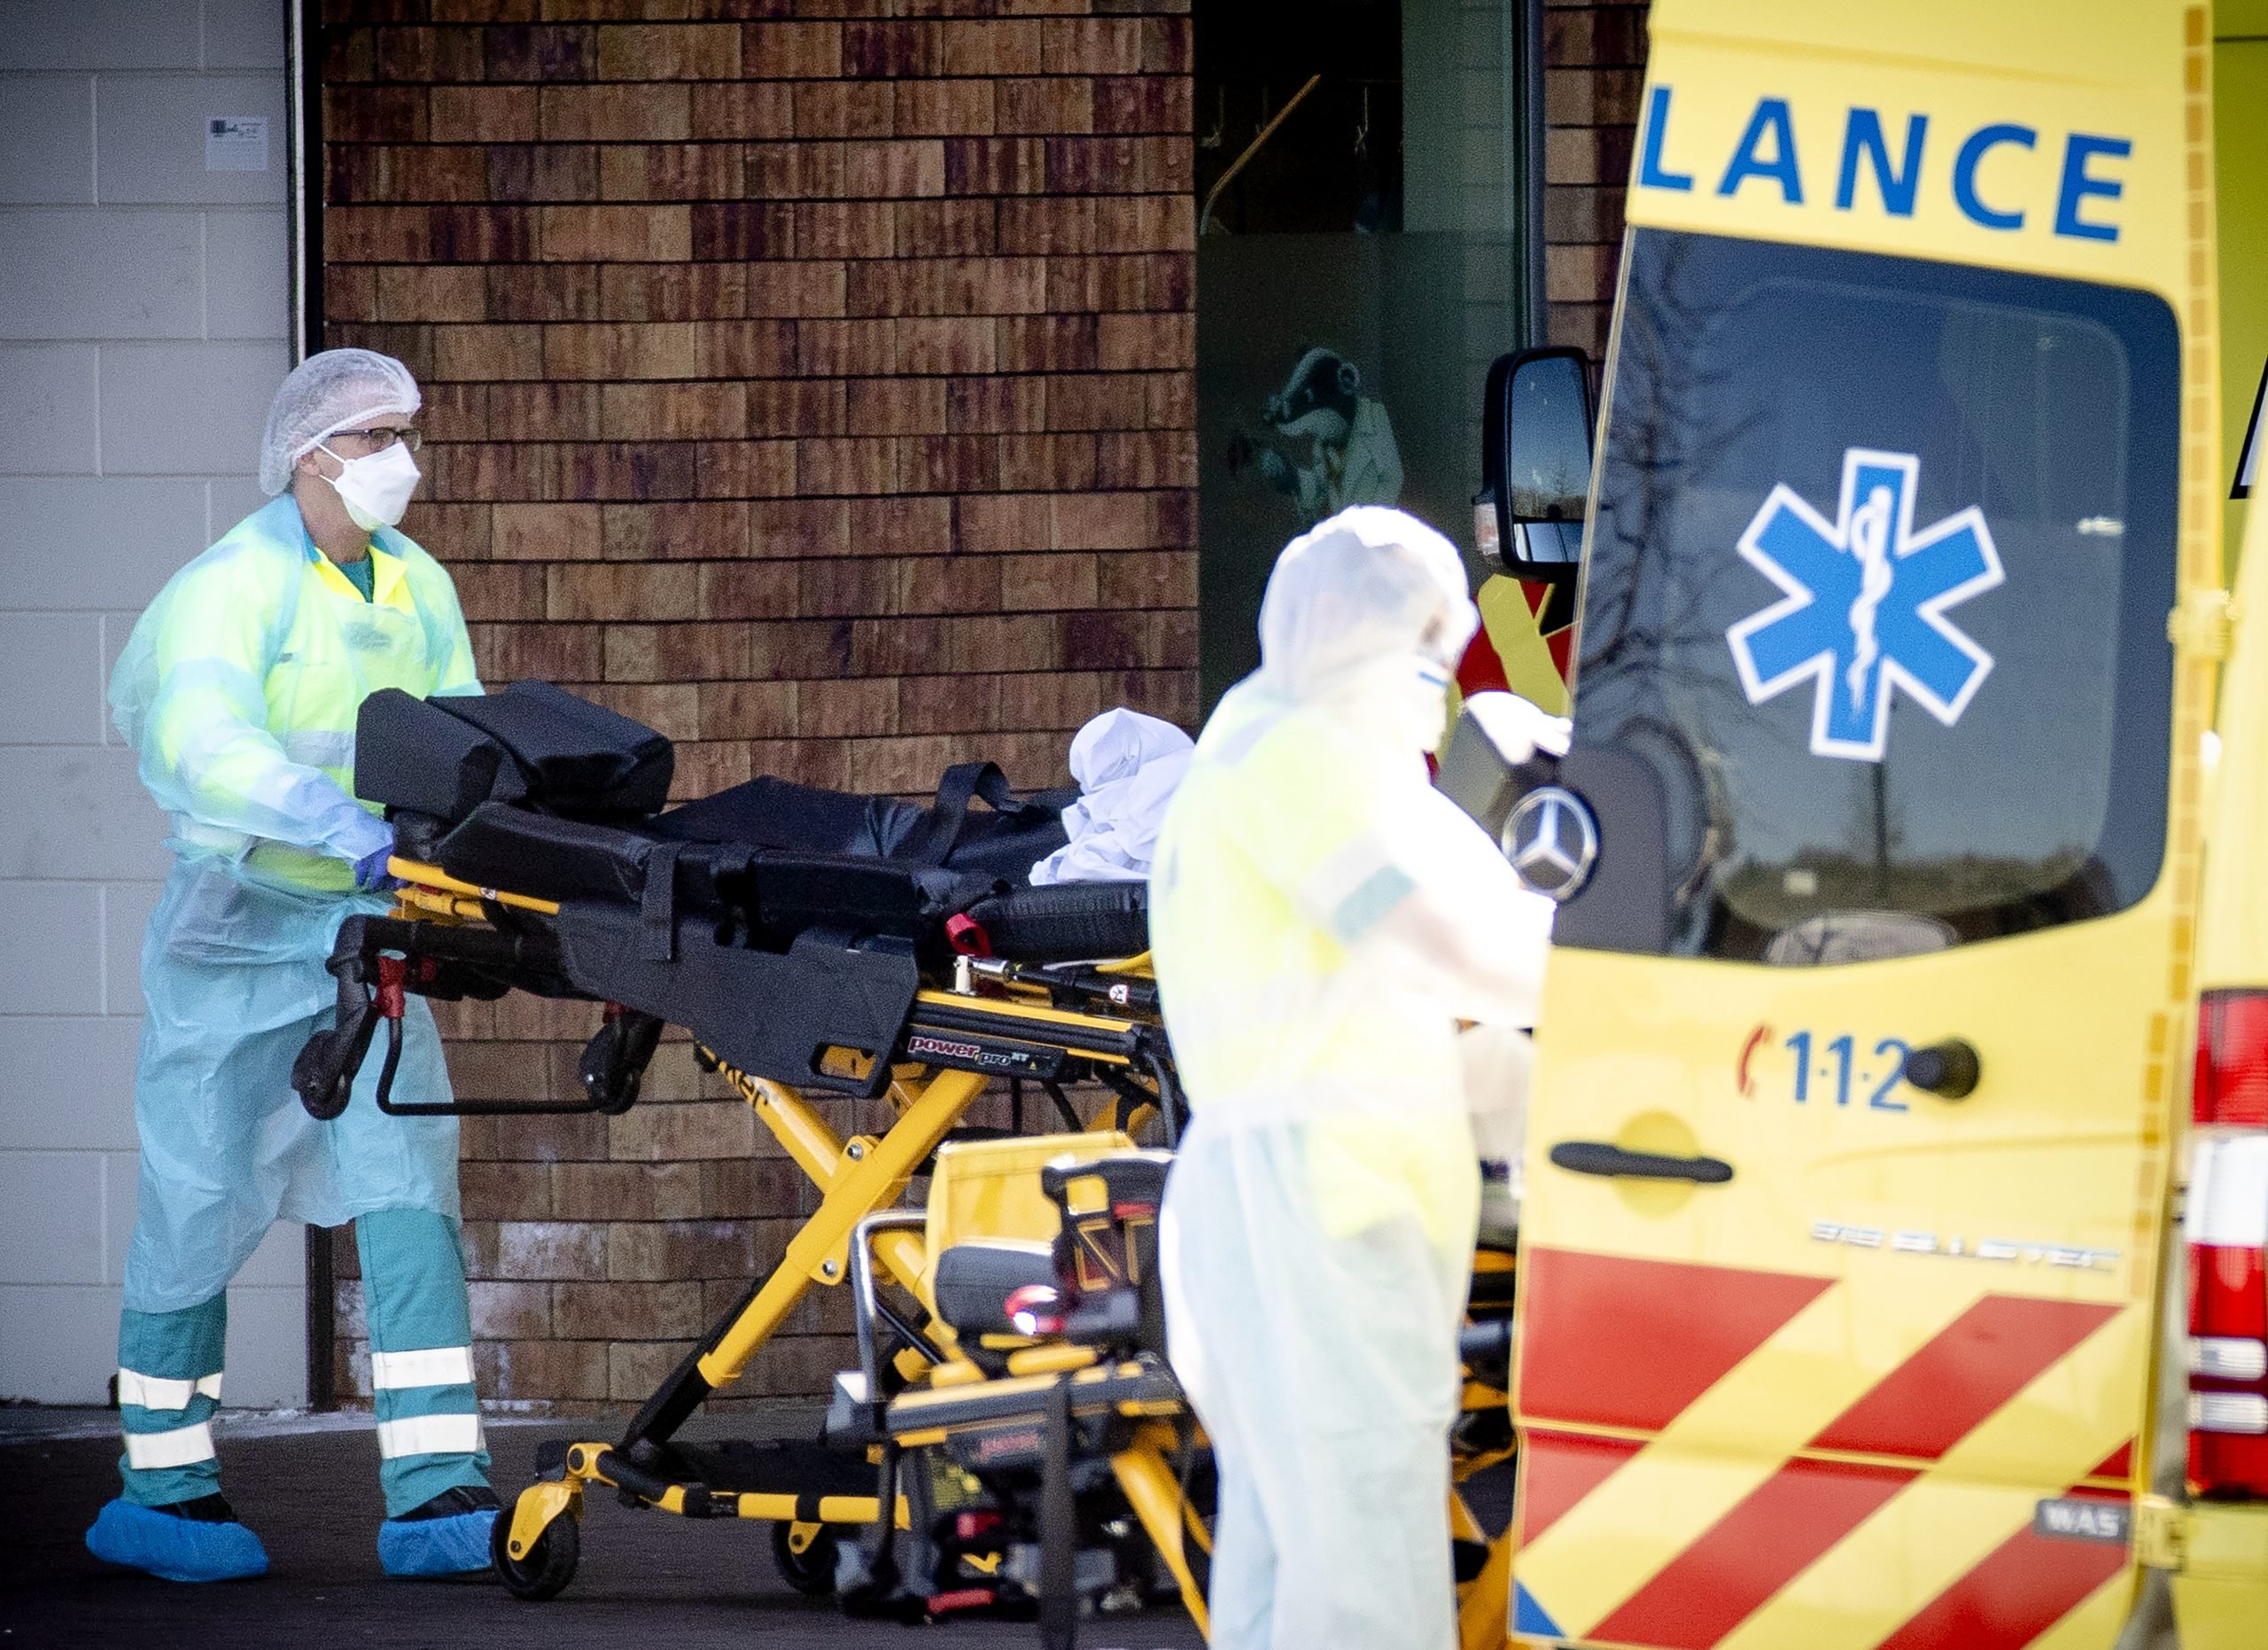 Een ambulance wordt gereinigd na het vervoeren van een coronapatiënt naar het Bernhoven ziekenhuis. In het ziekenhuis liggen veel patiënten met het coronavirus.